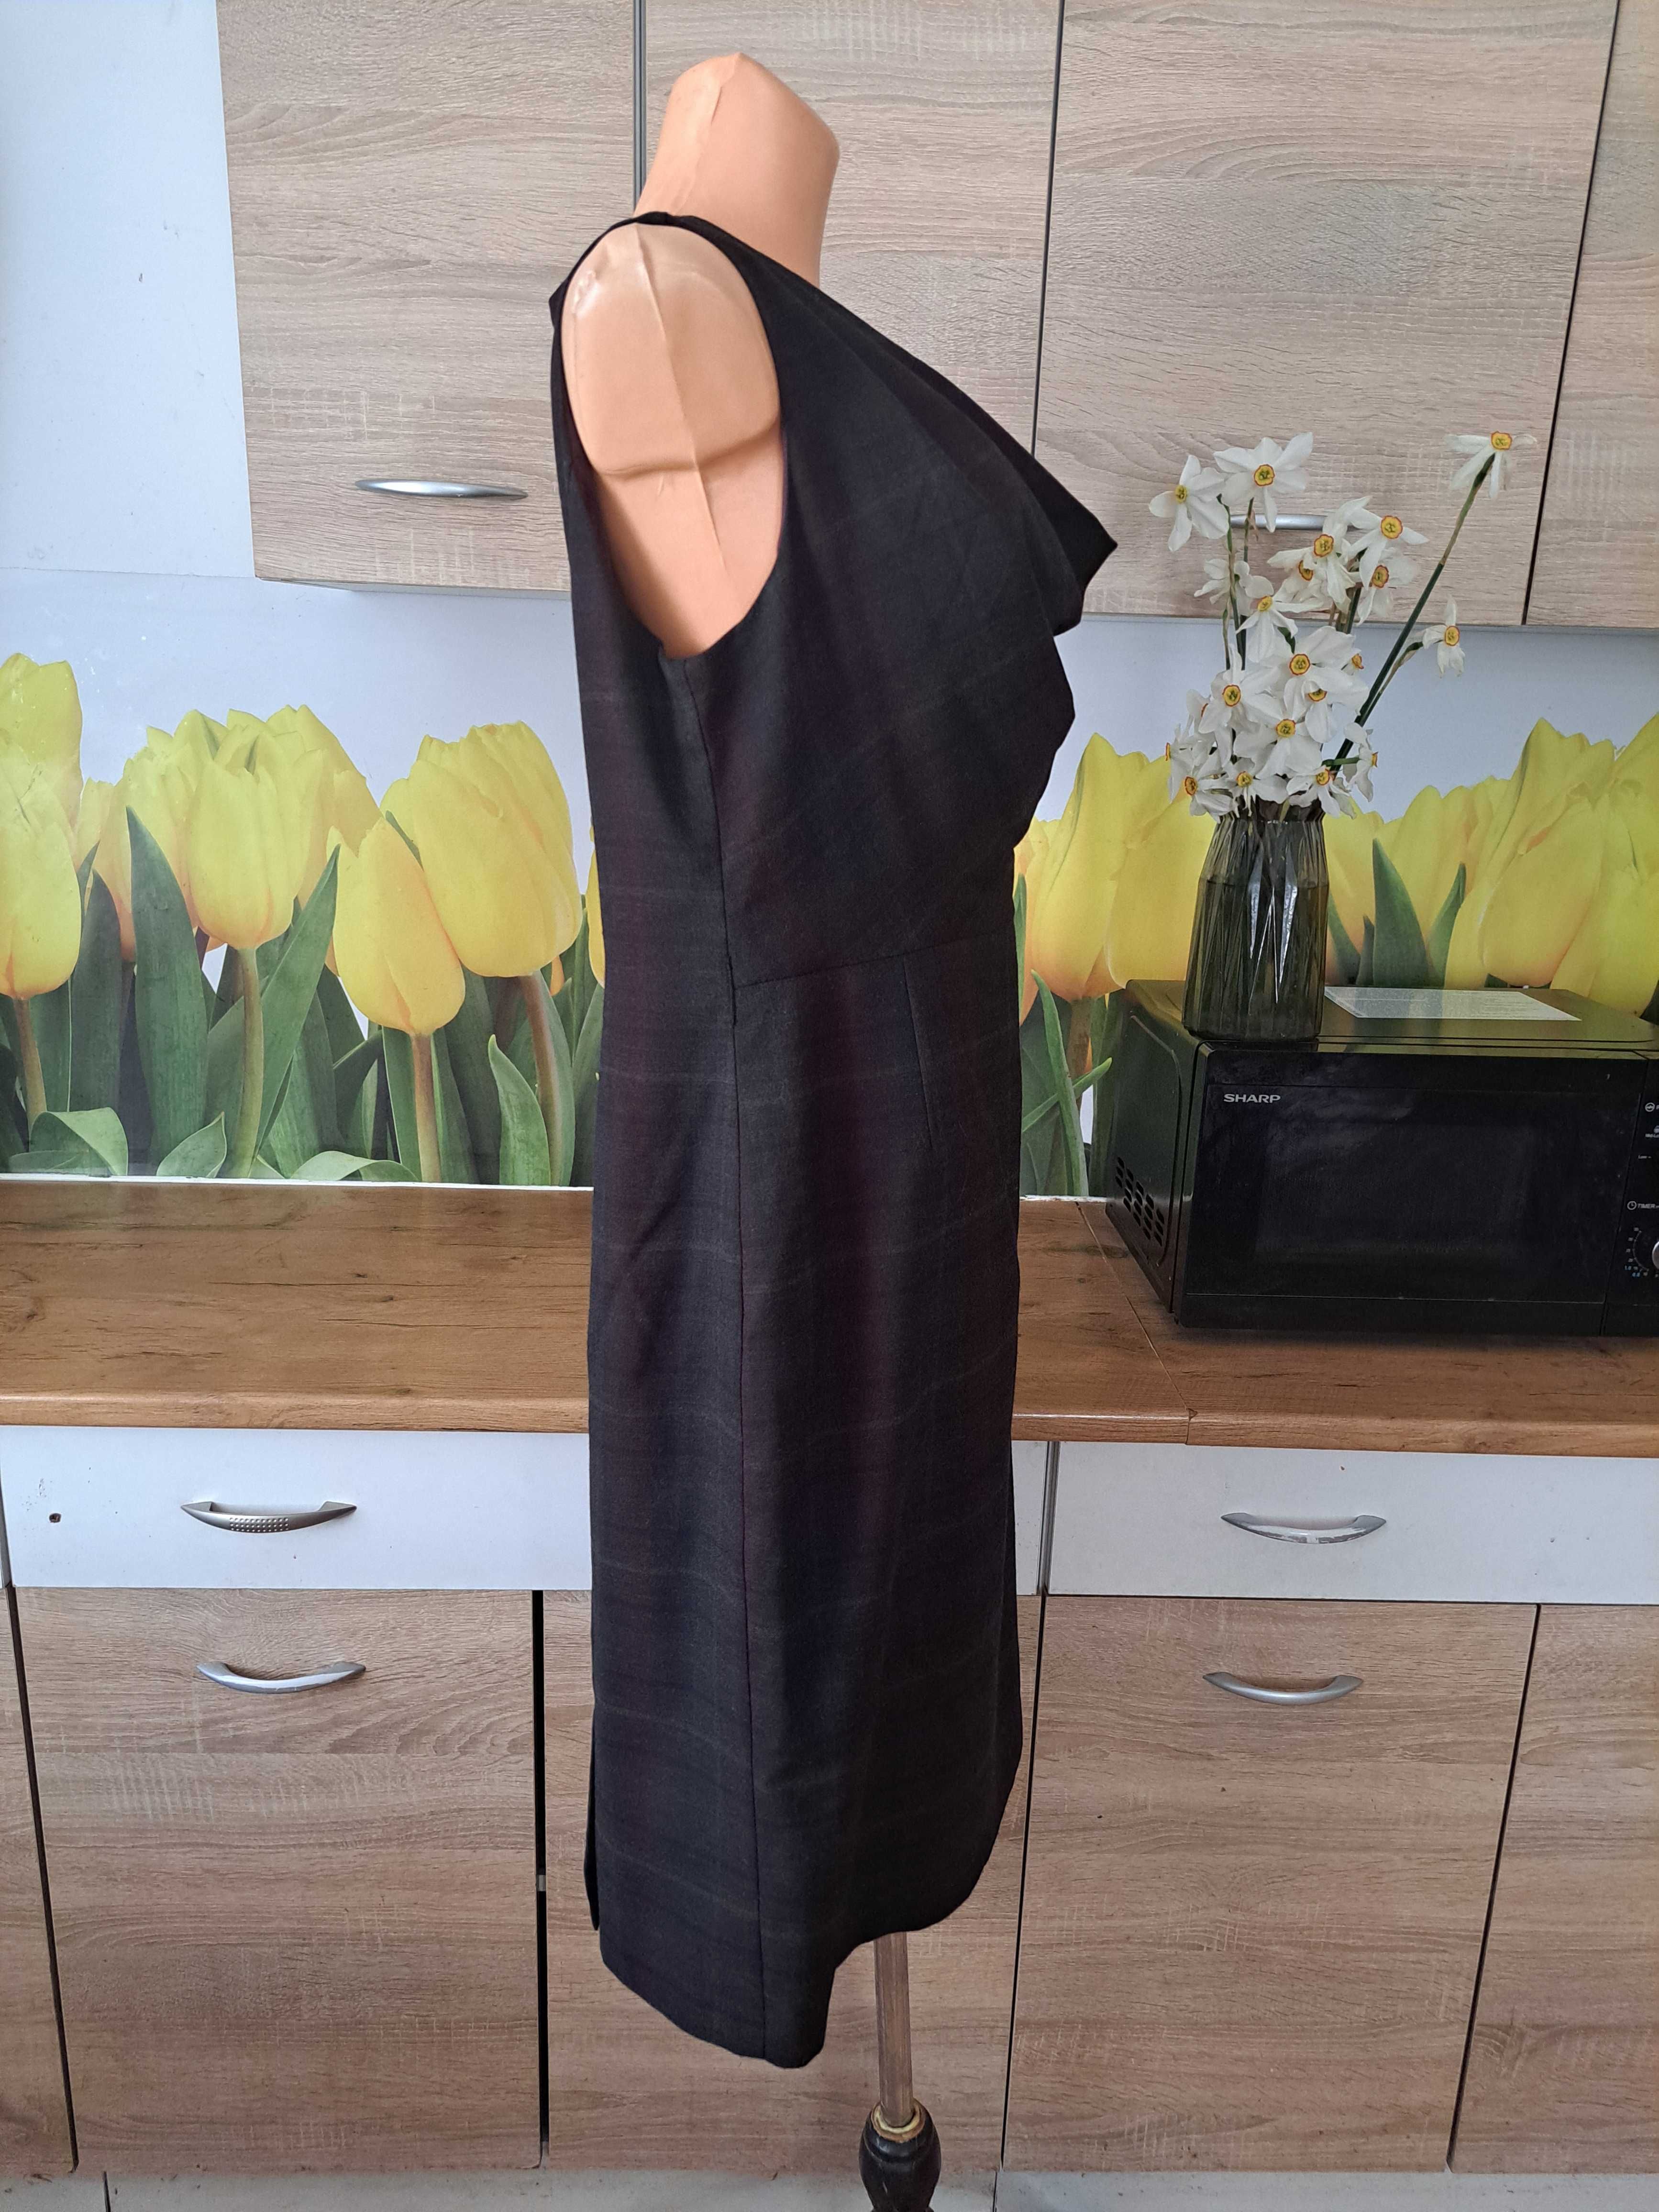 Biurowa sukienka F&F rozmiar 44 poliester/wiskoza, delikatna kratka